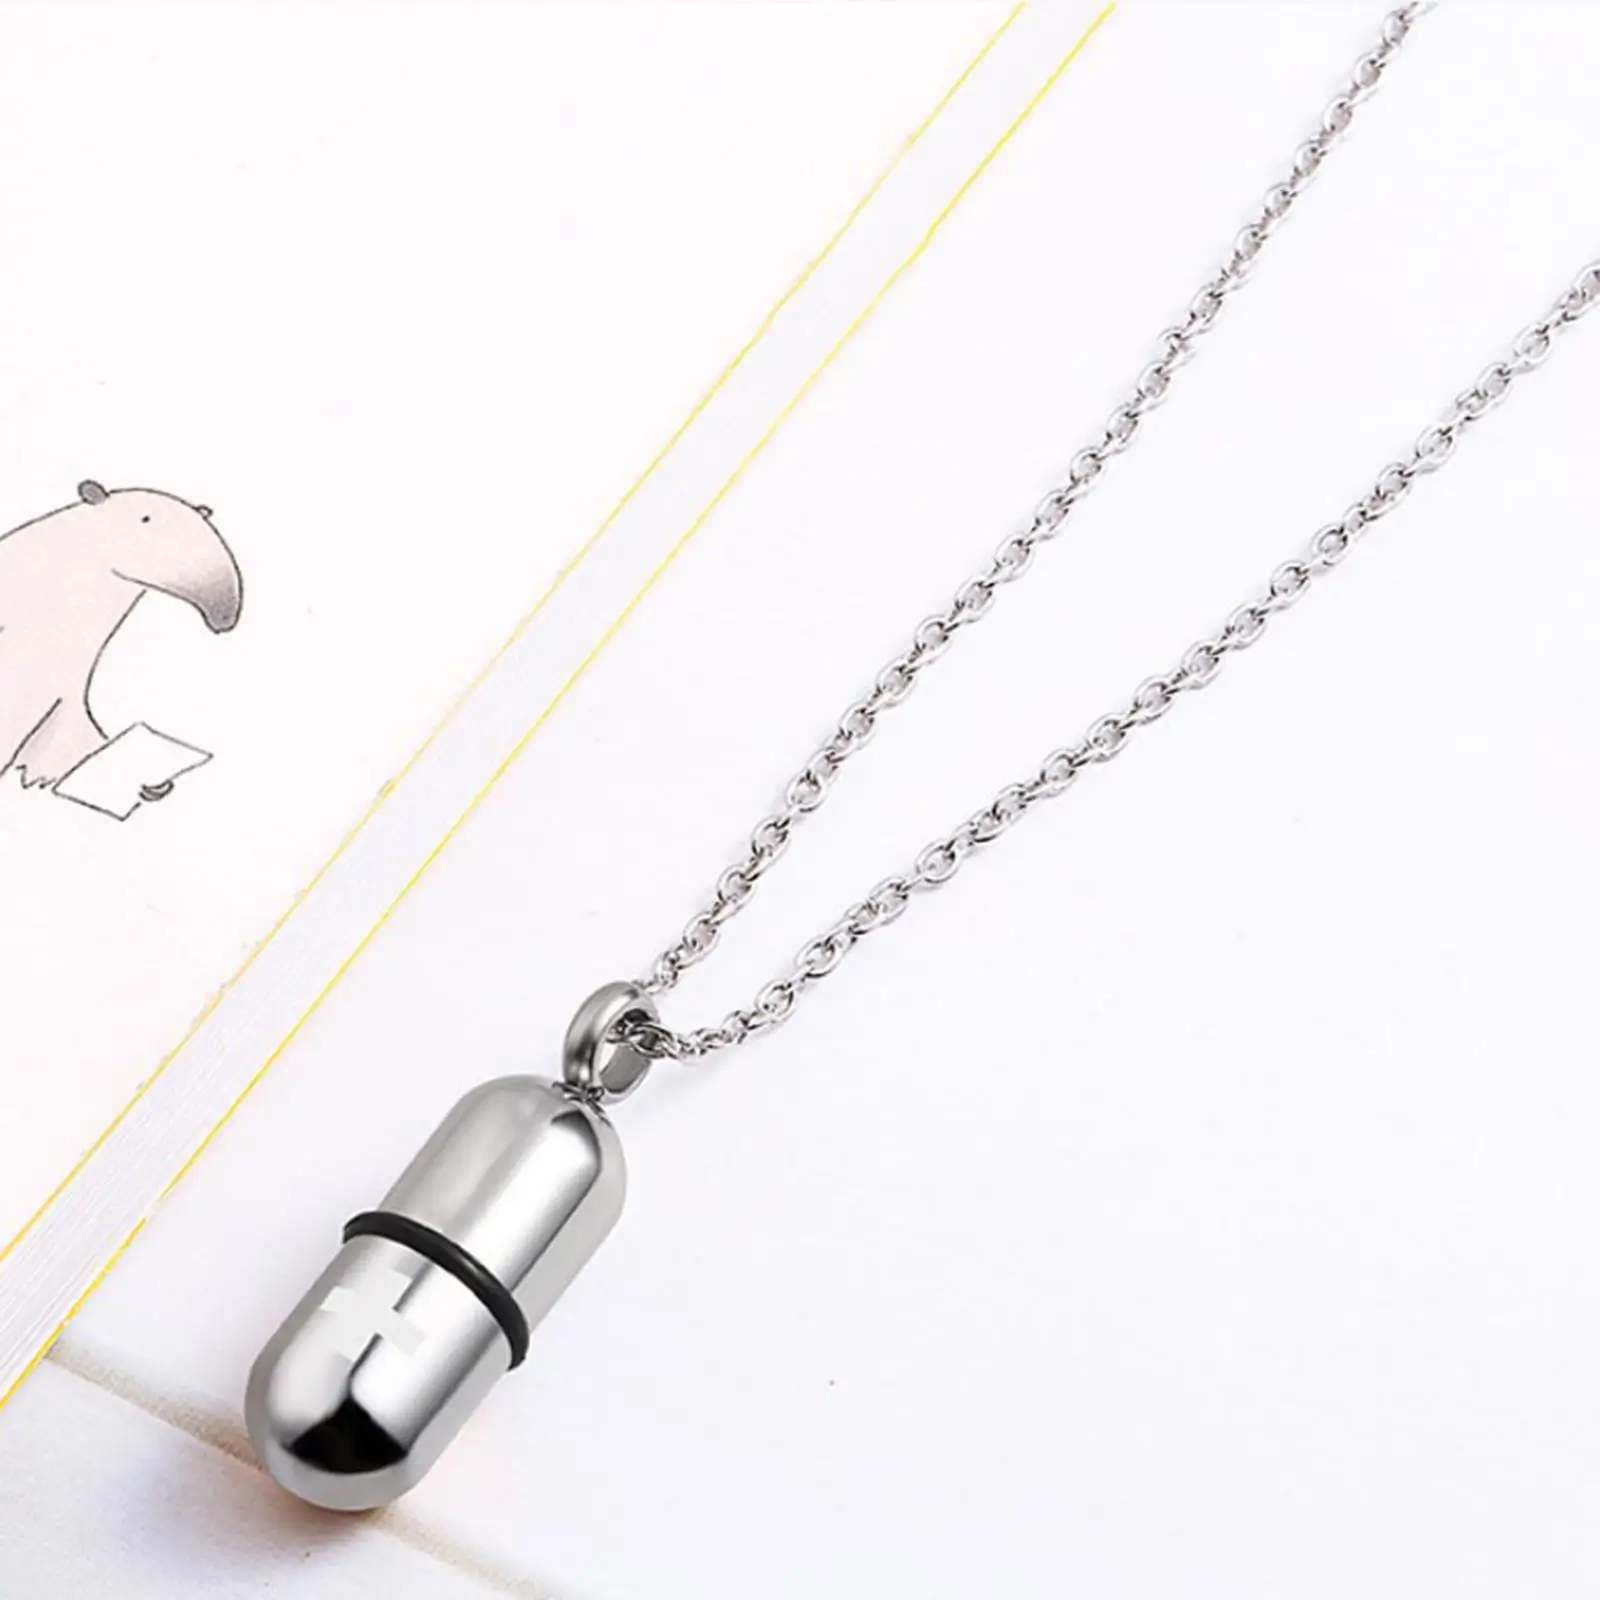 Small Men Capsule Pendant Necklace Pill Filler Kit Keepsake Holder Titanium Steel W/ Chain & Funnel Multi Color Option for Cat